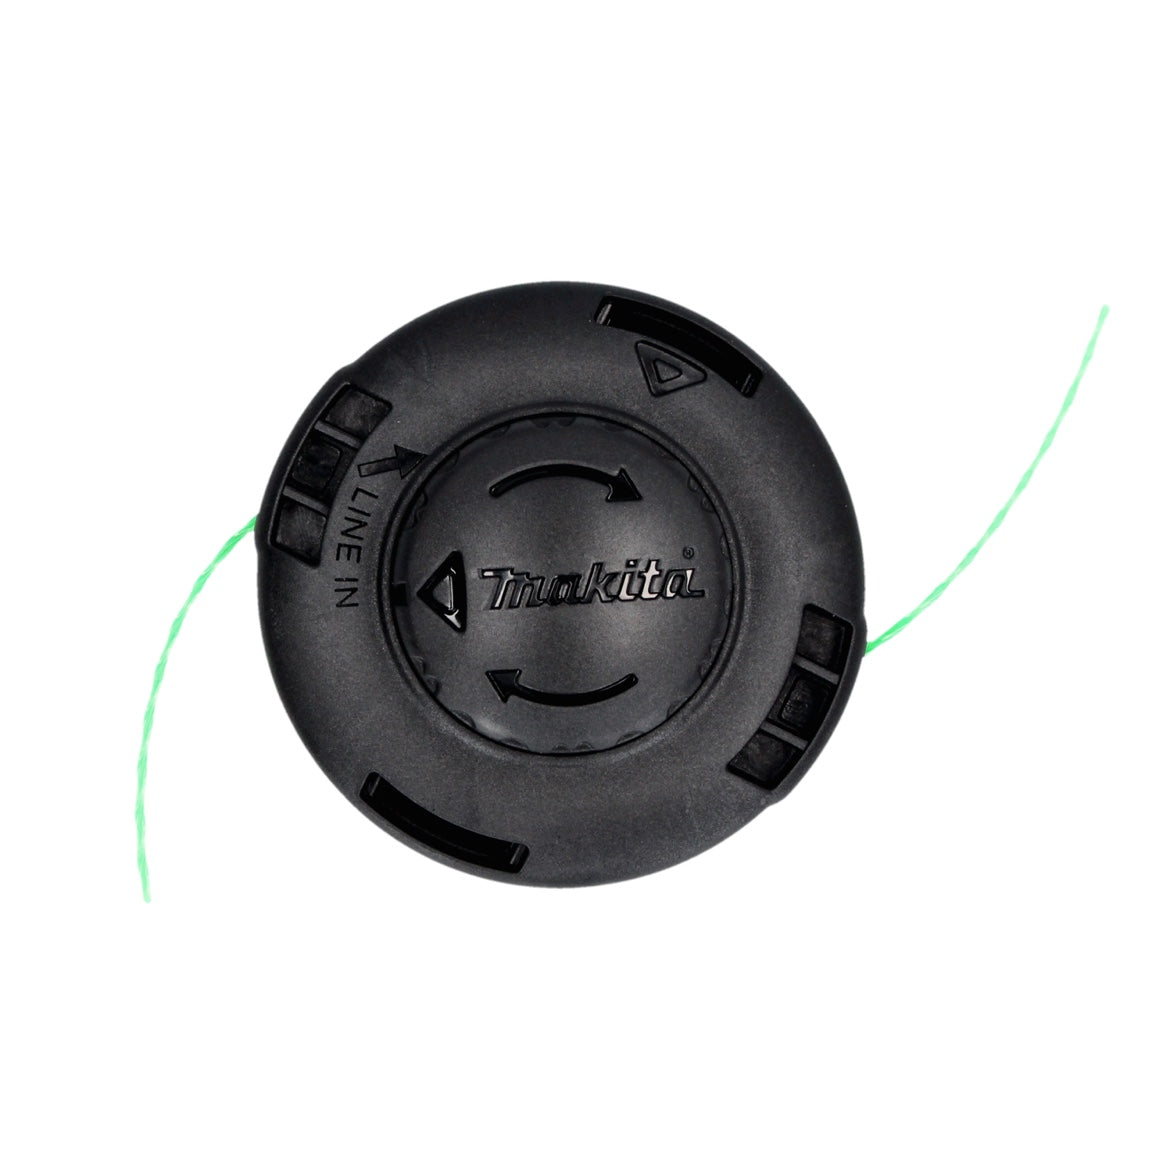 Makita 2-Fadenkopf Tap&Go 2,0 mm ( 191D91-7 ) für 18 V Akku Rasentrimmer DUR 187 und DUR 188